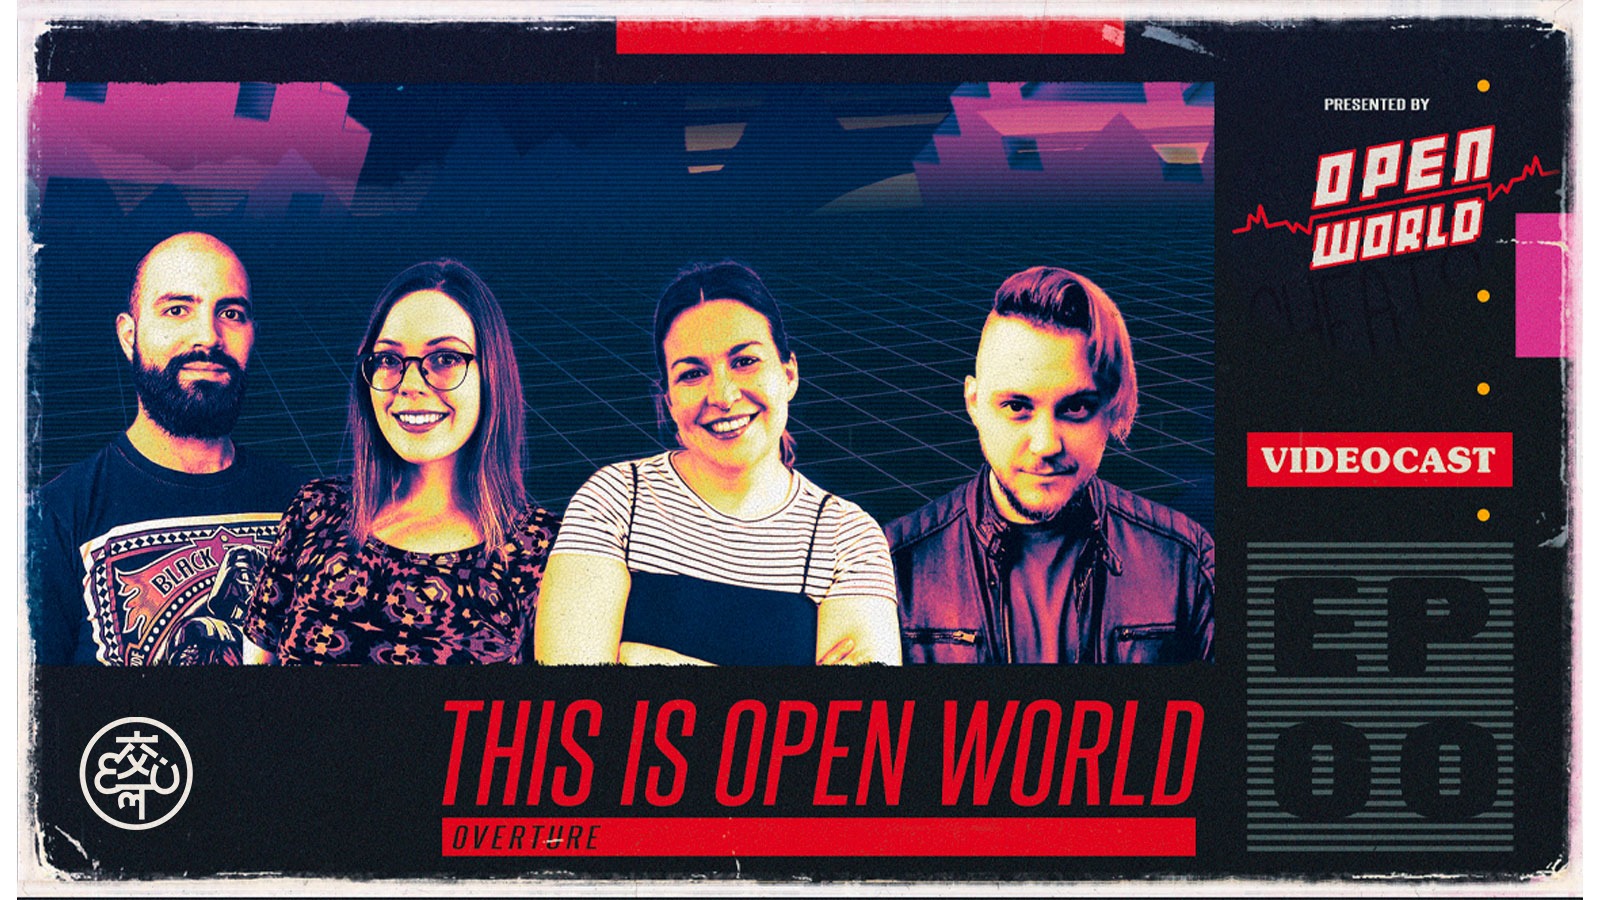 Open World - Meet the hosts